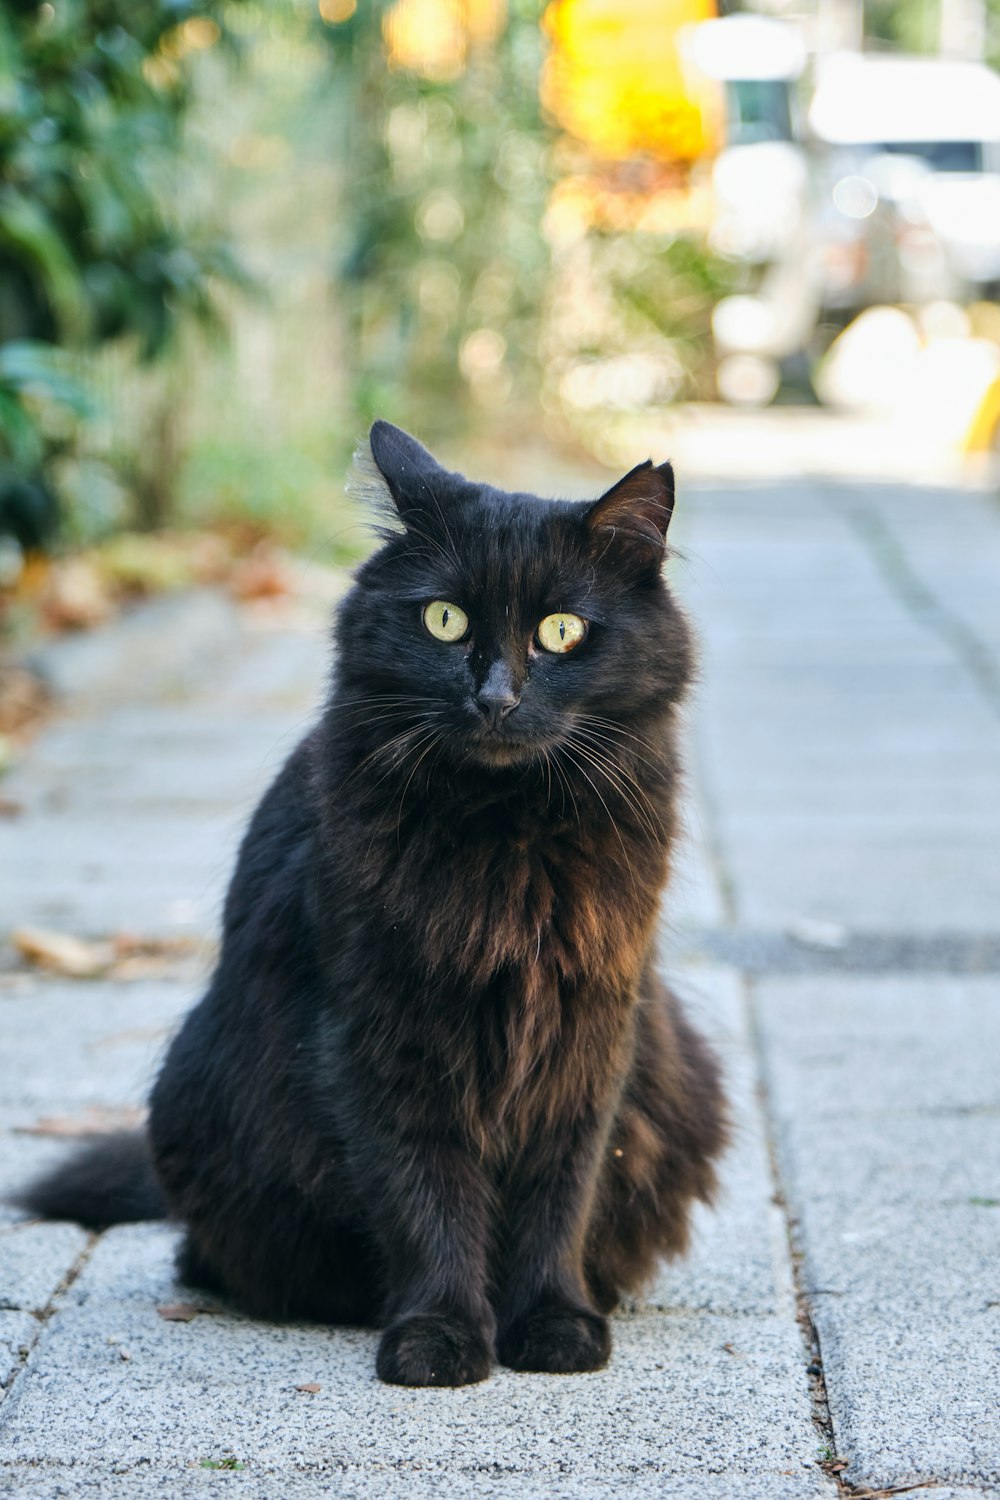 a black cat sitting on a sidewalk